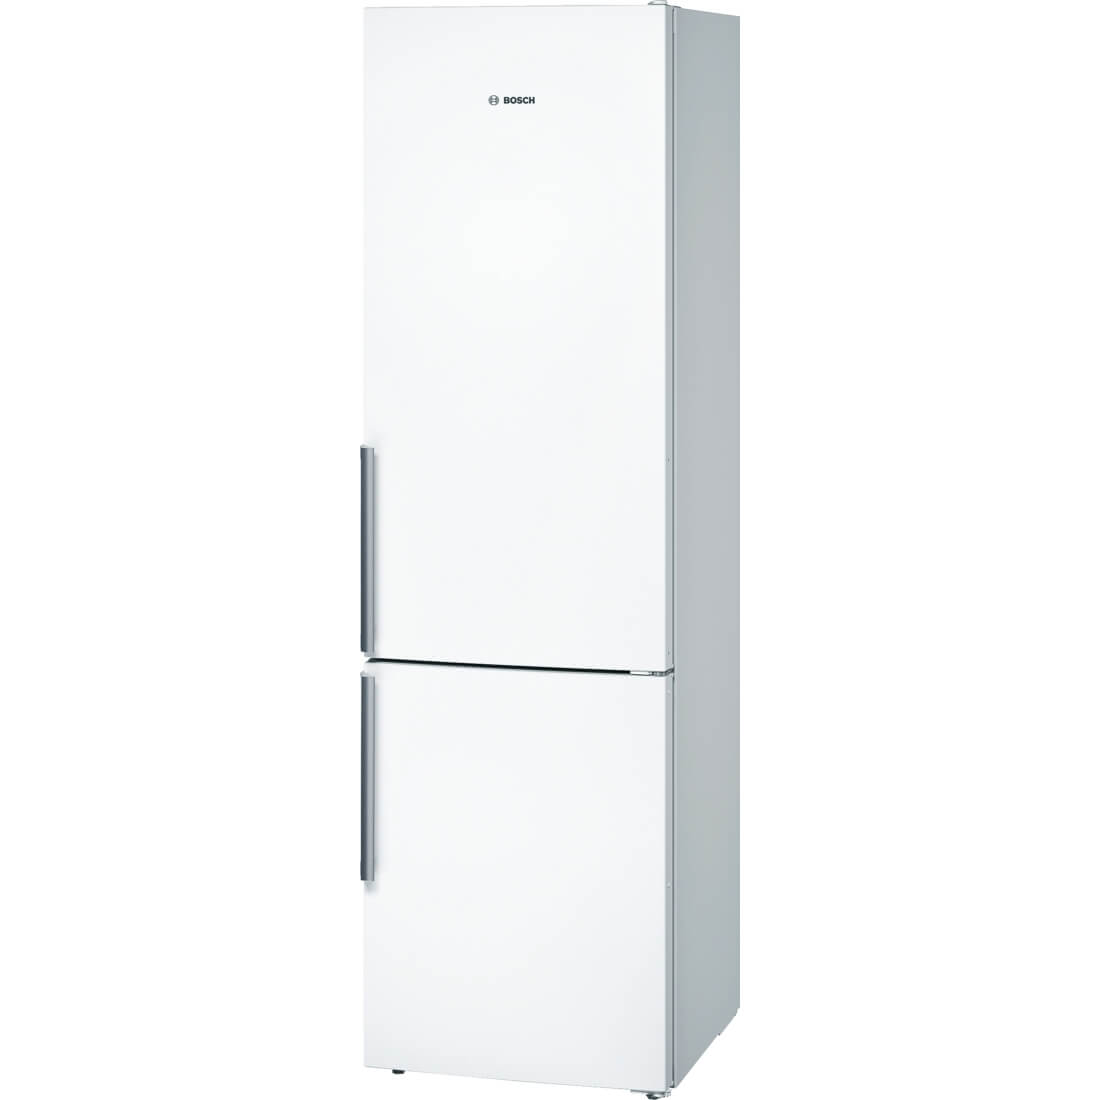 Combina frigorifica Bosch KGN39VW35, No Frost, 366 l, Clasa A++